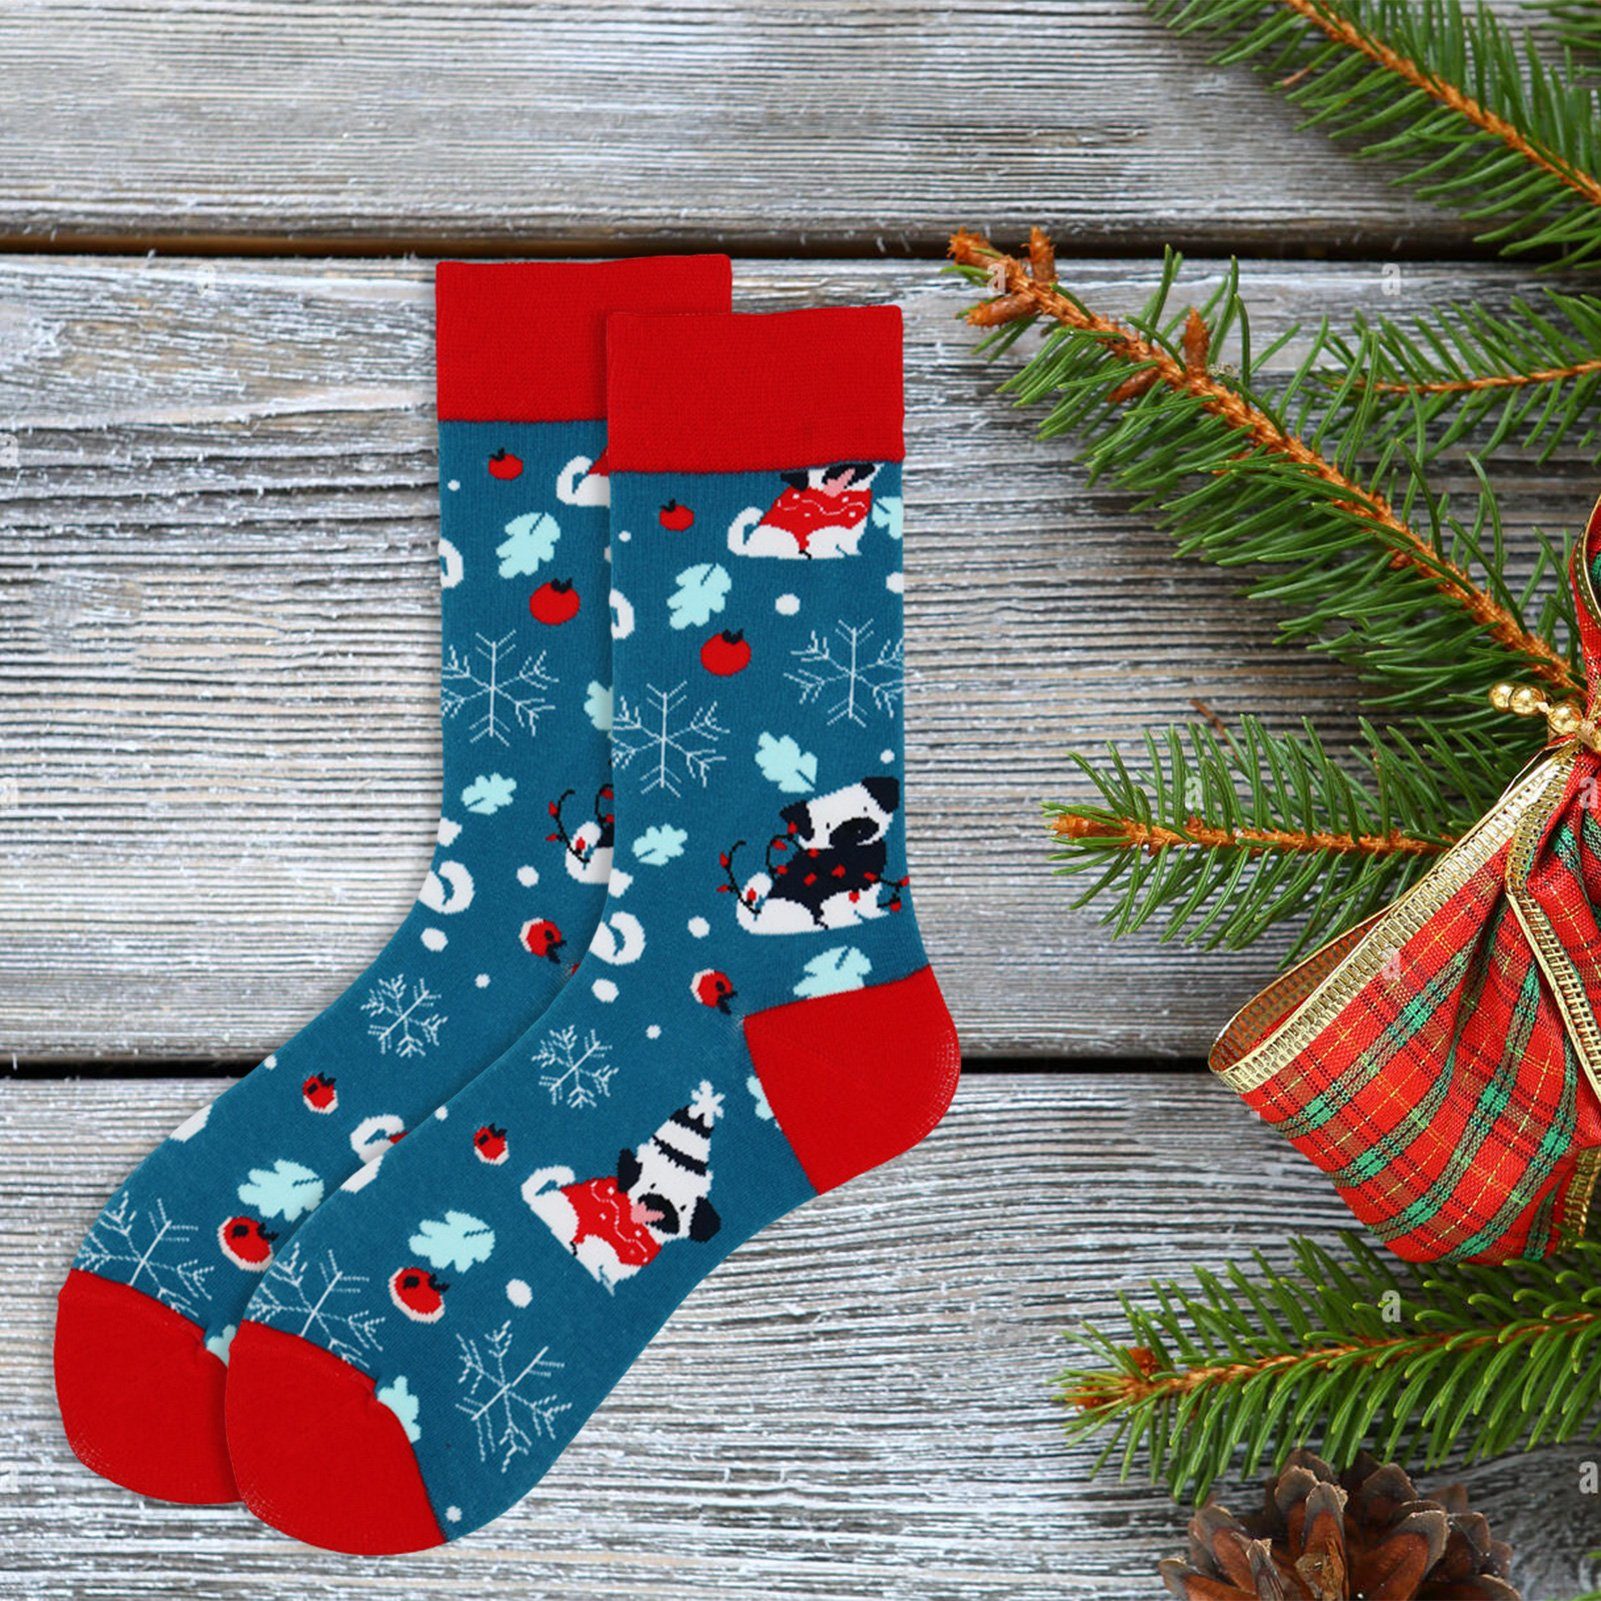 Rutaqian Socken 2 Paar Weihnachts Cartoon Socken,Weihnachten Baumwolle Socken (Bunter Aufdruck, Weihnachtsmann-Schneemann-Muster, Unisex Kuschelsocken Winter Socken Festliche Socken) Weich, Rutschfest,Elastisch, Vorgeschrumpft für Weihnachtsgeschenke Blau